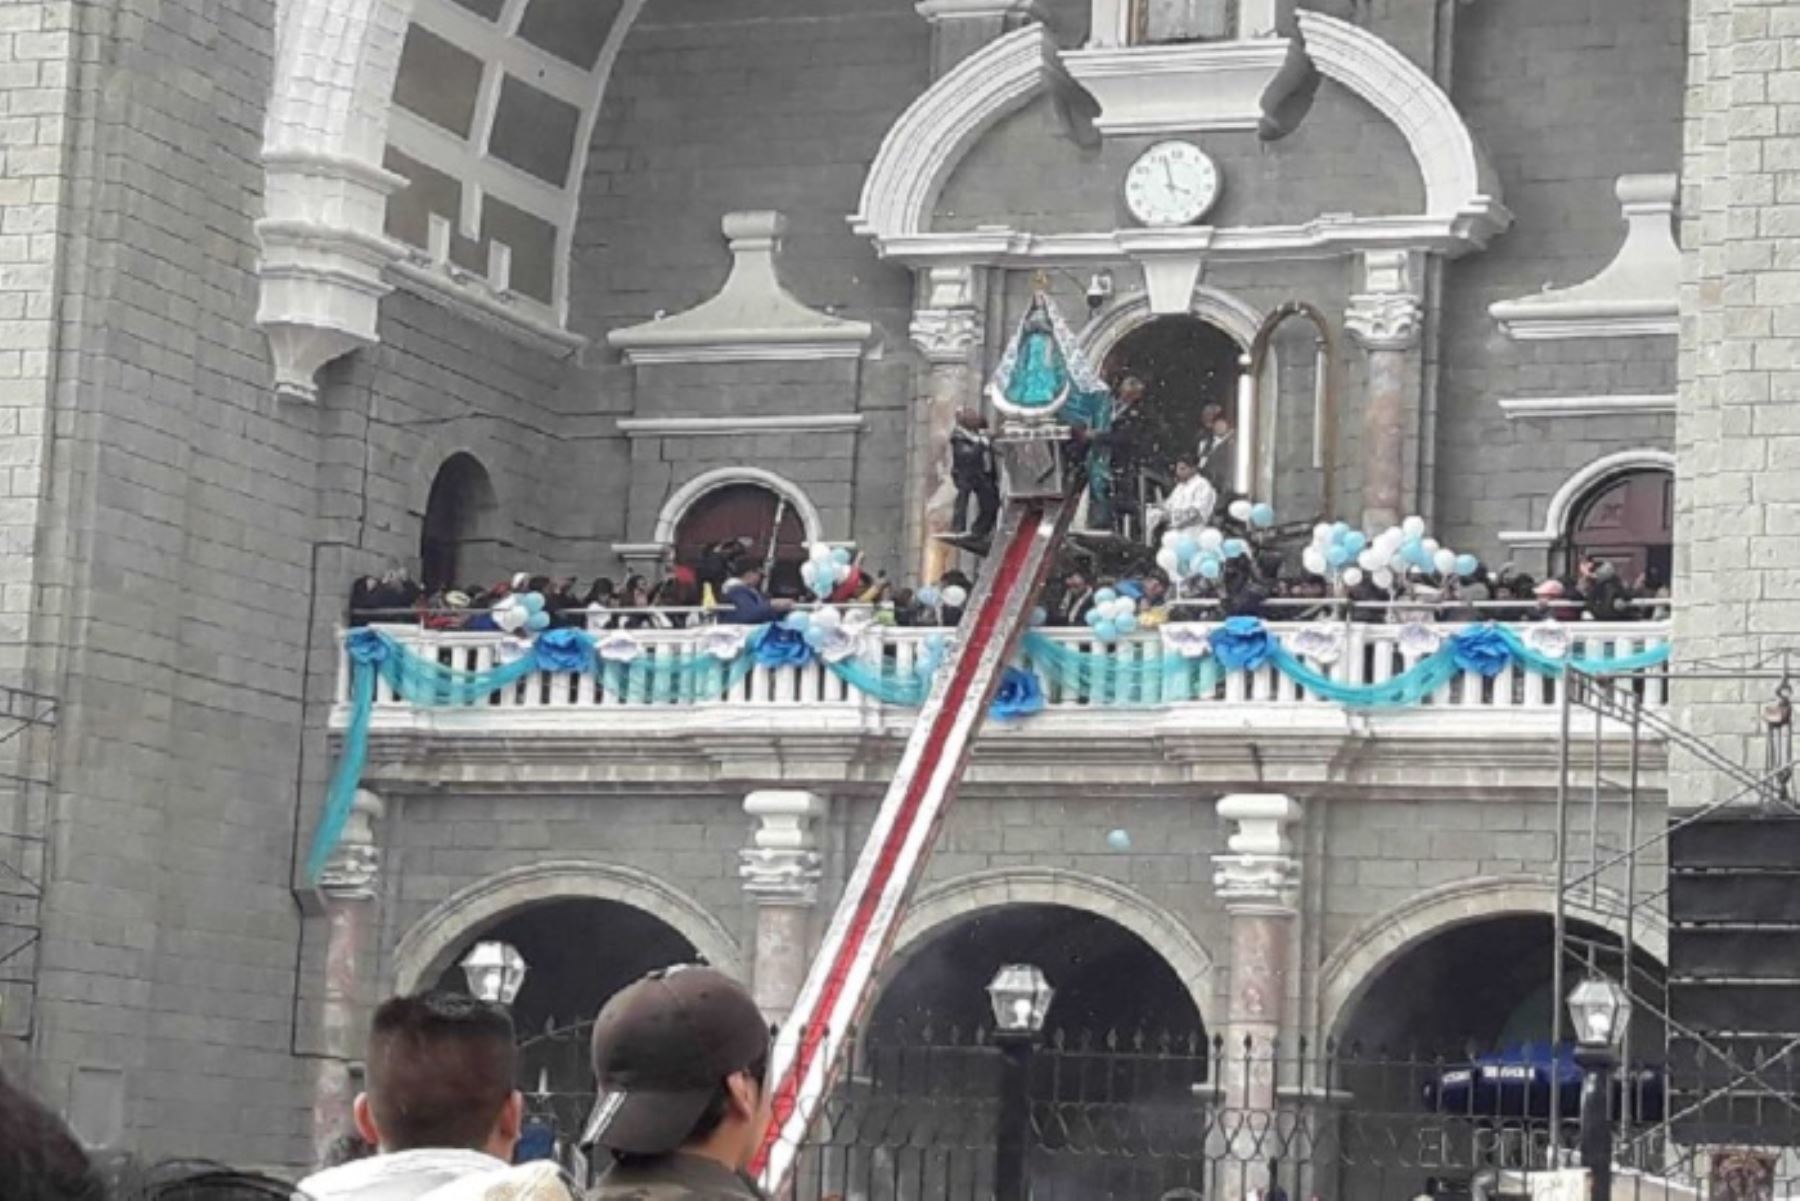 Miles de fieles católicos nacionales y extranjeros han abarrotado la Plaza de Armas de Otuzco, ubicada en la provincia del mismo nombre, región La Libertad, para presenciar en los próximos minutos la tradicional bajada de la Virgen de La Puerta.